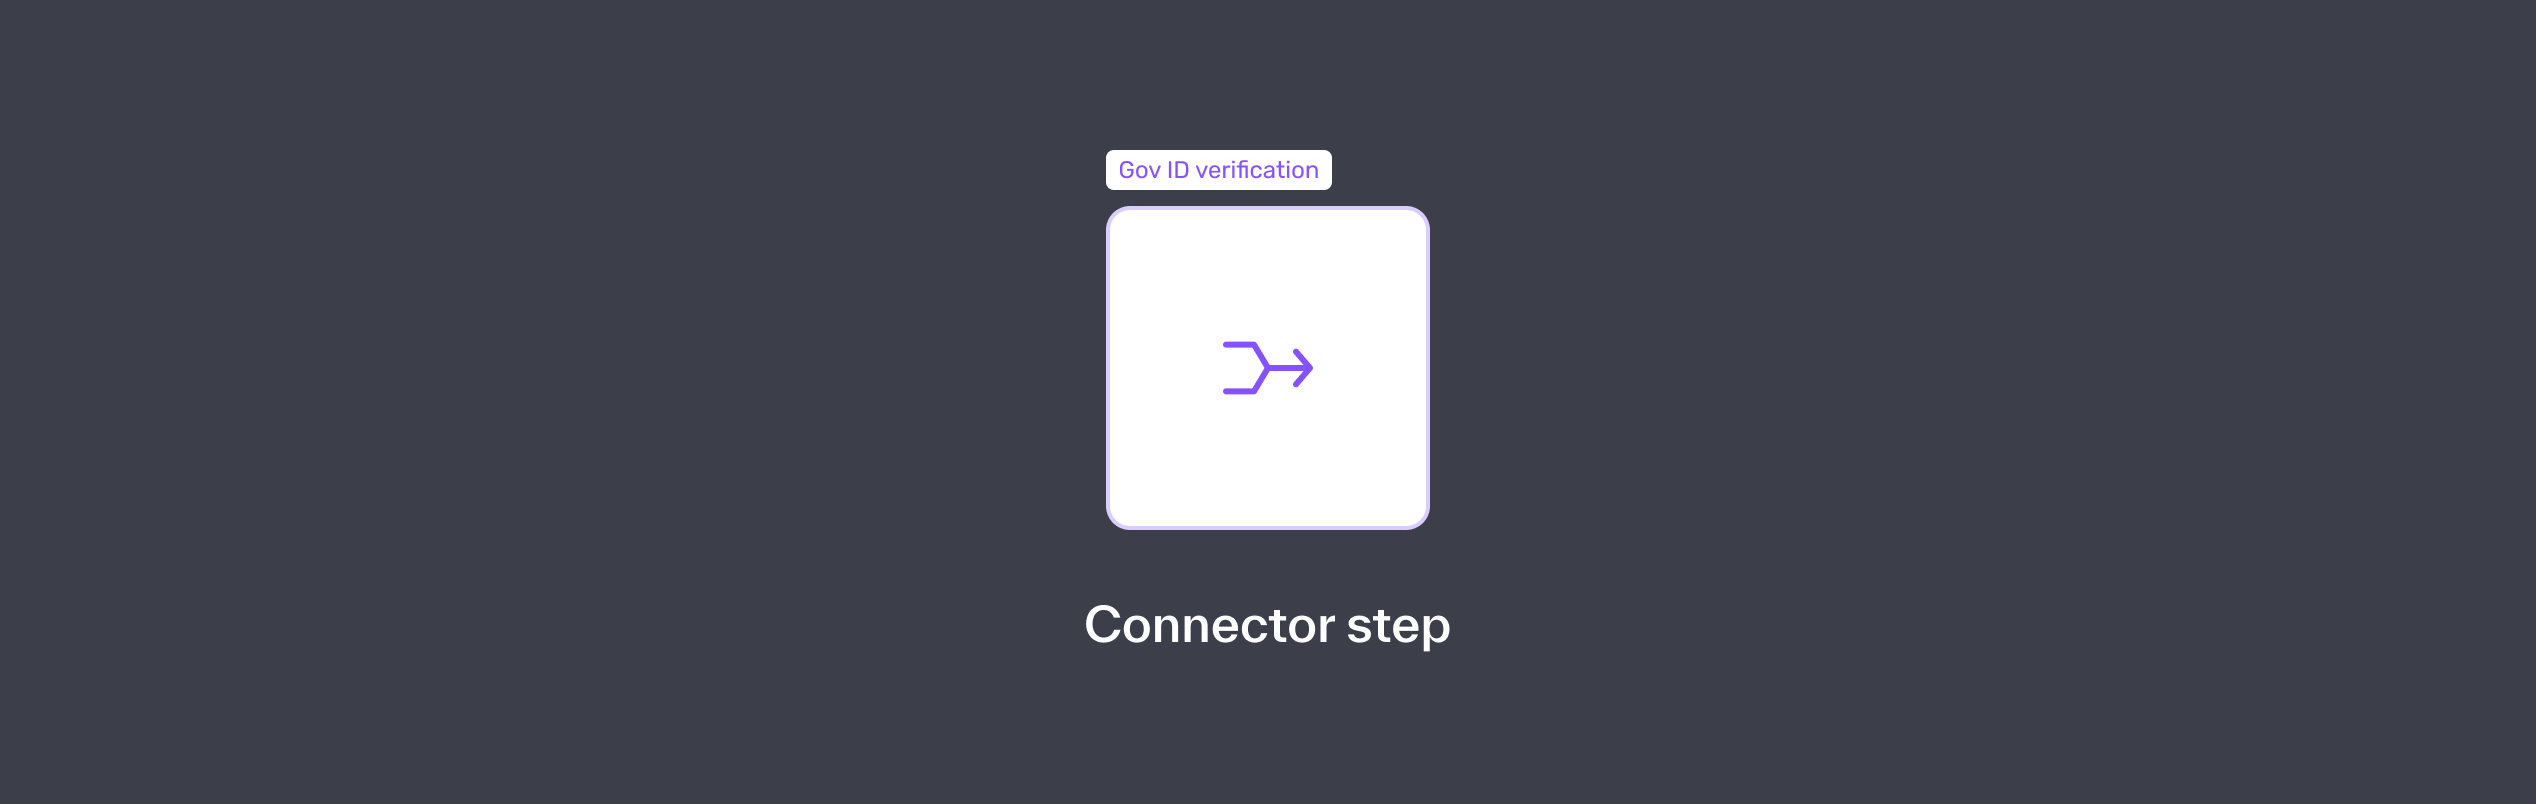 ConnectorStep